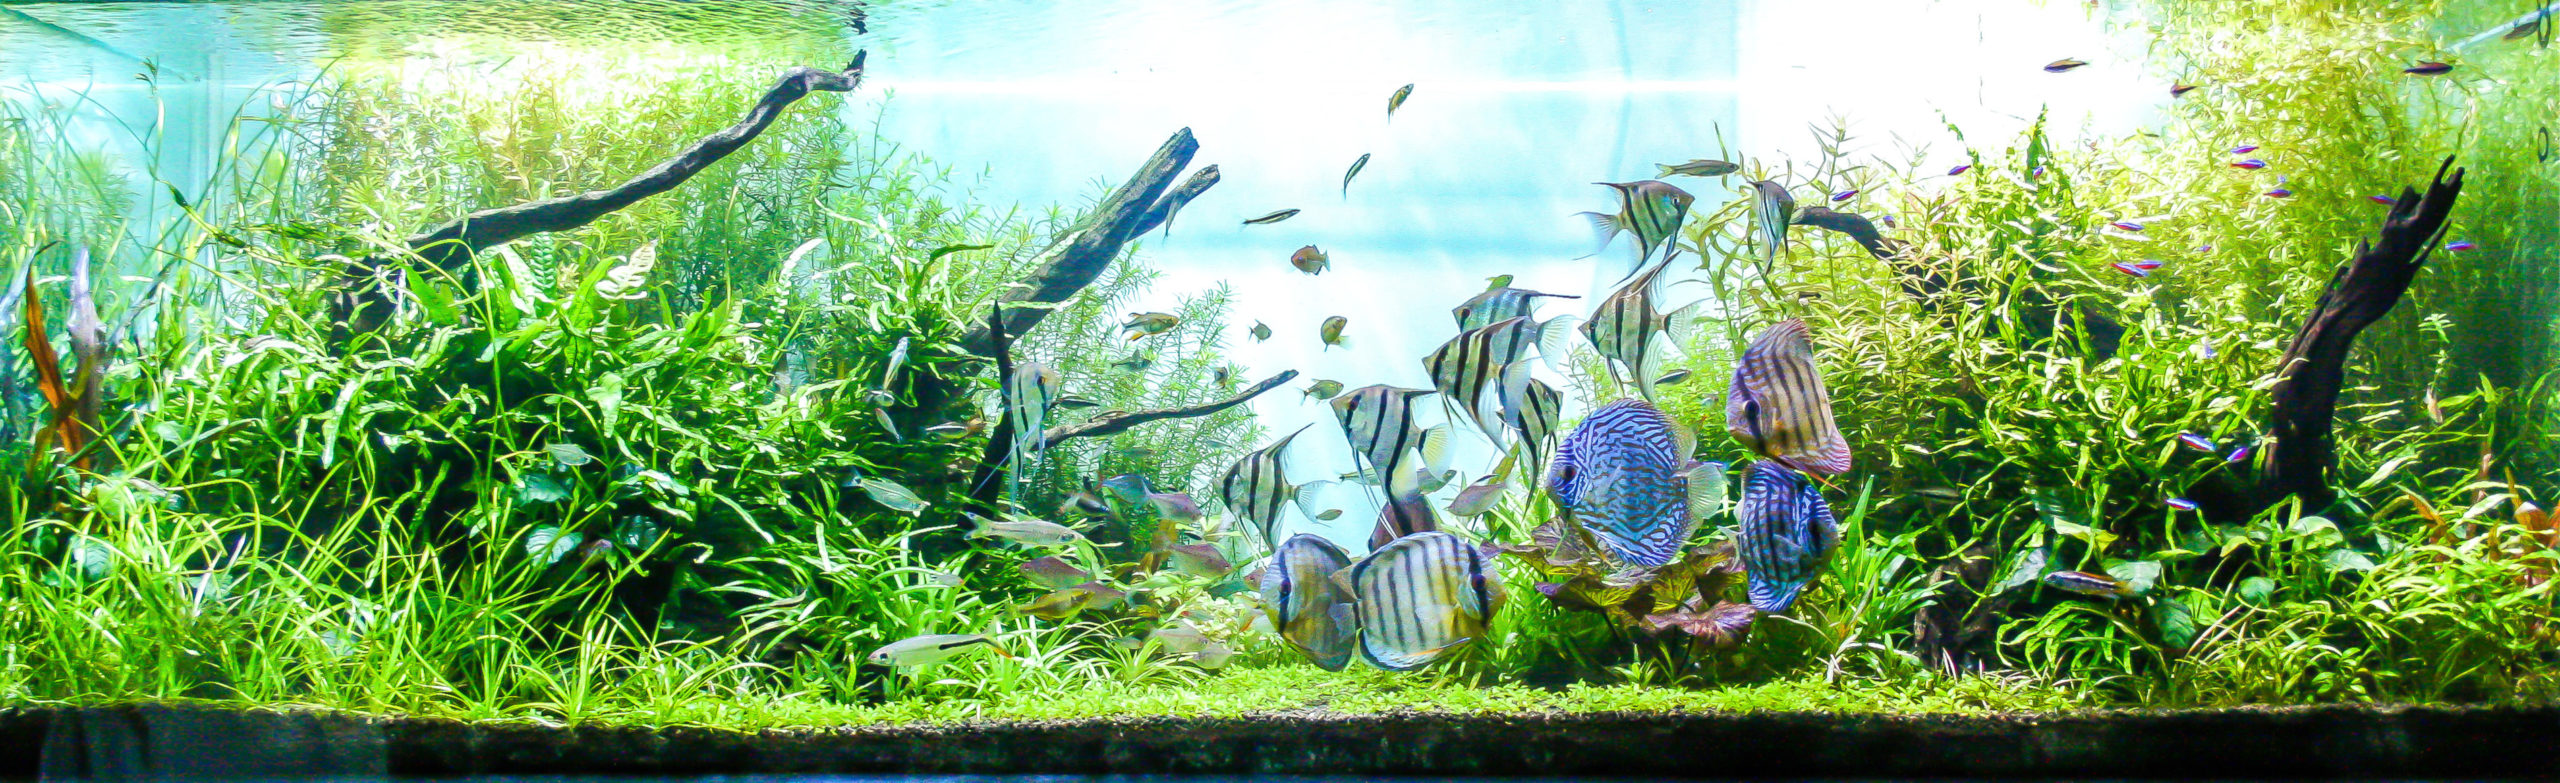 Chauffage aquarium : une température idéale dès 12.99 € !